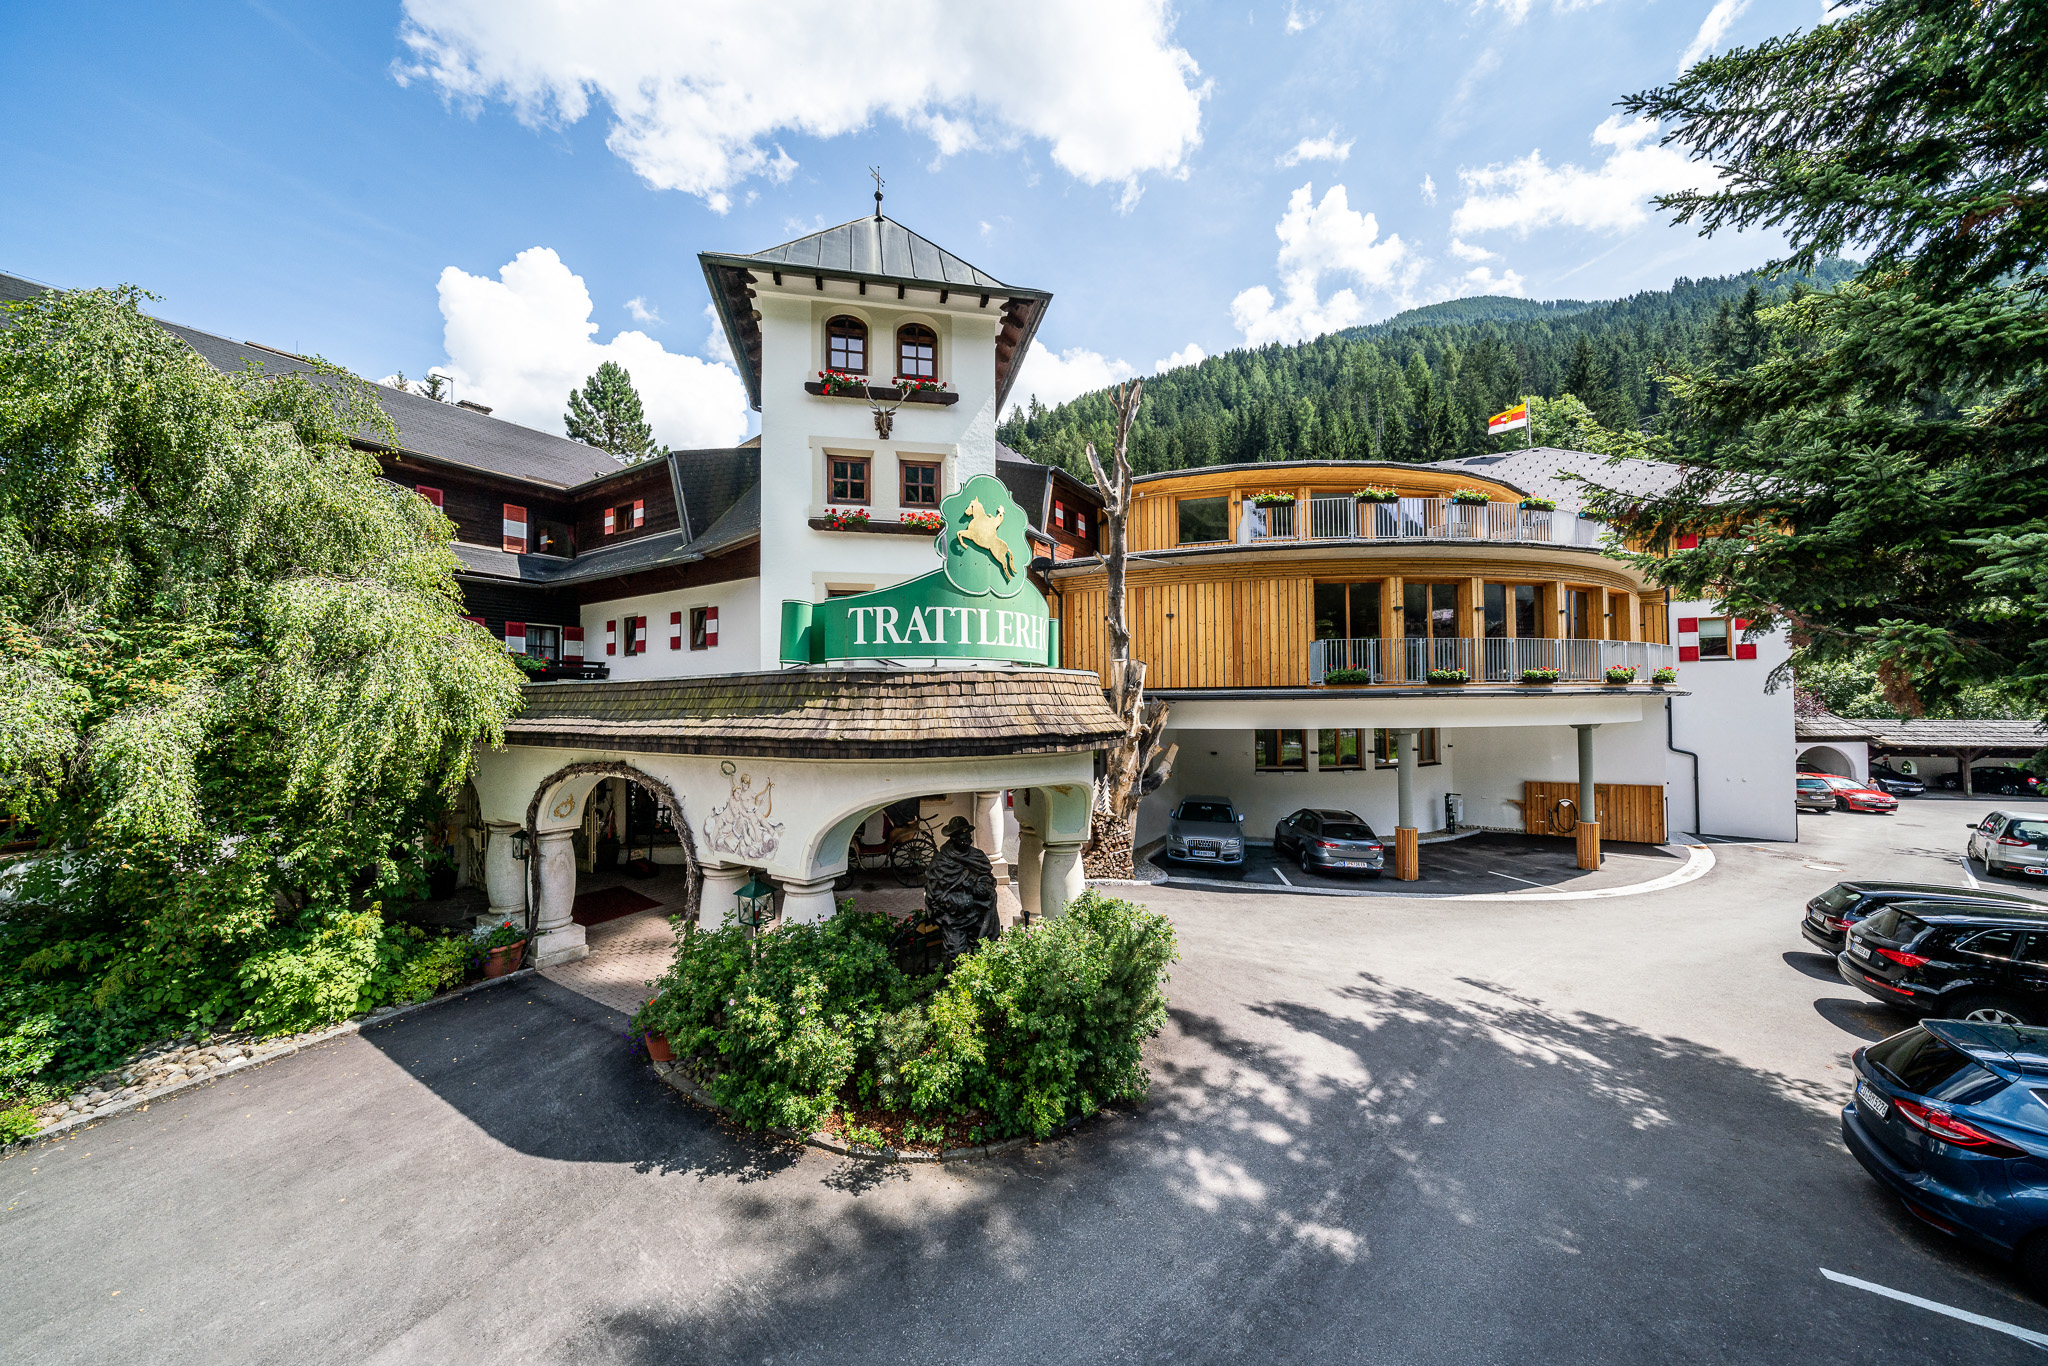 400 € Wertgutschein für das Hotel GUT Trattlerhof in Bad Kleinkirchheim